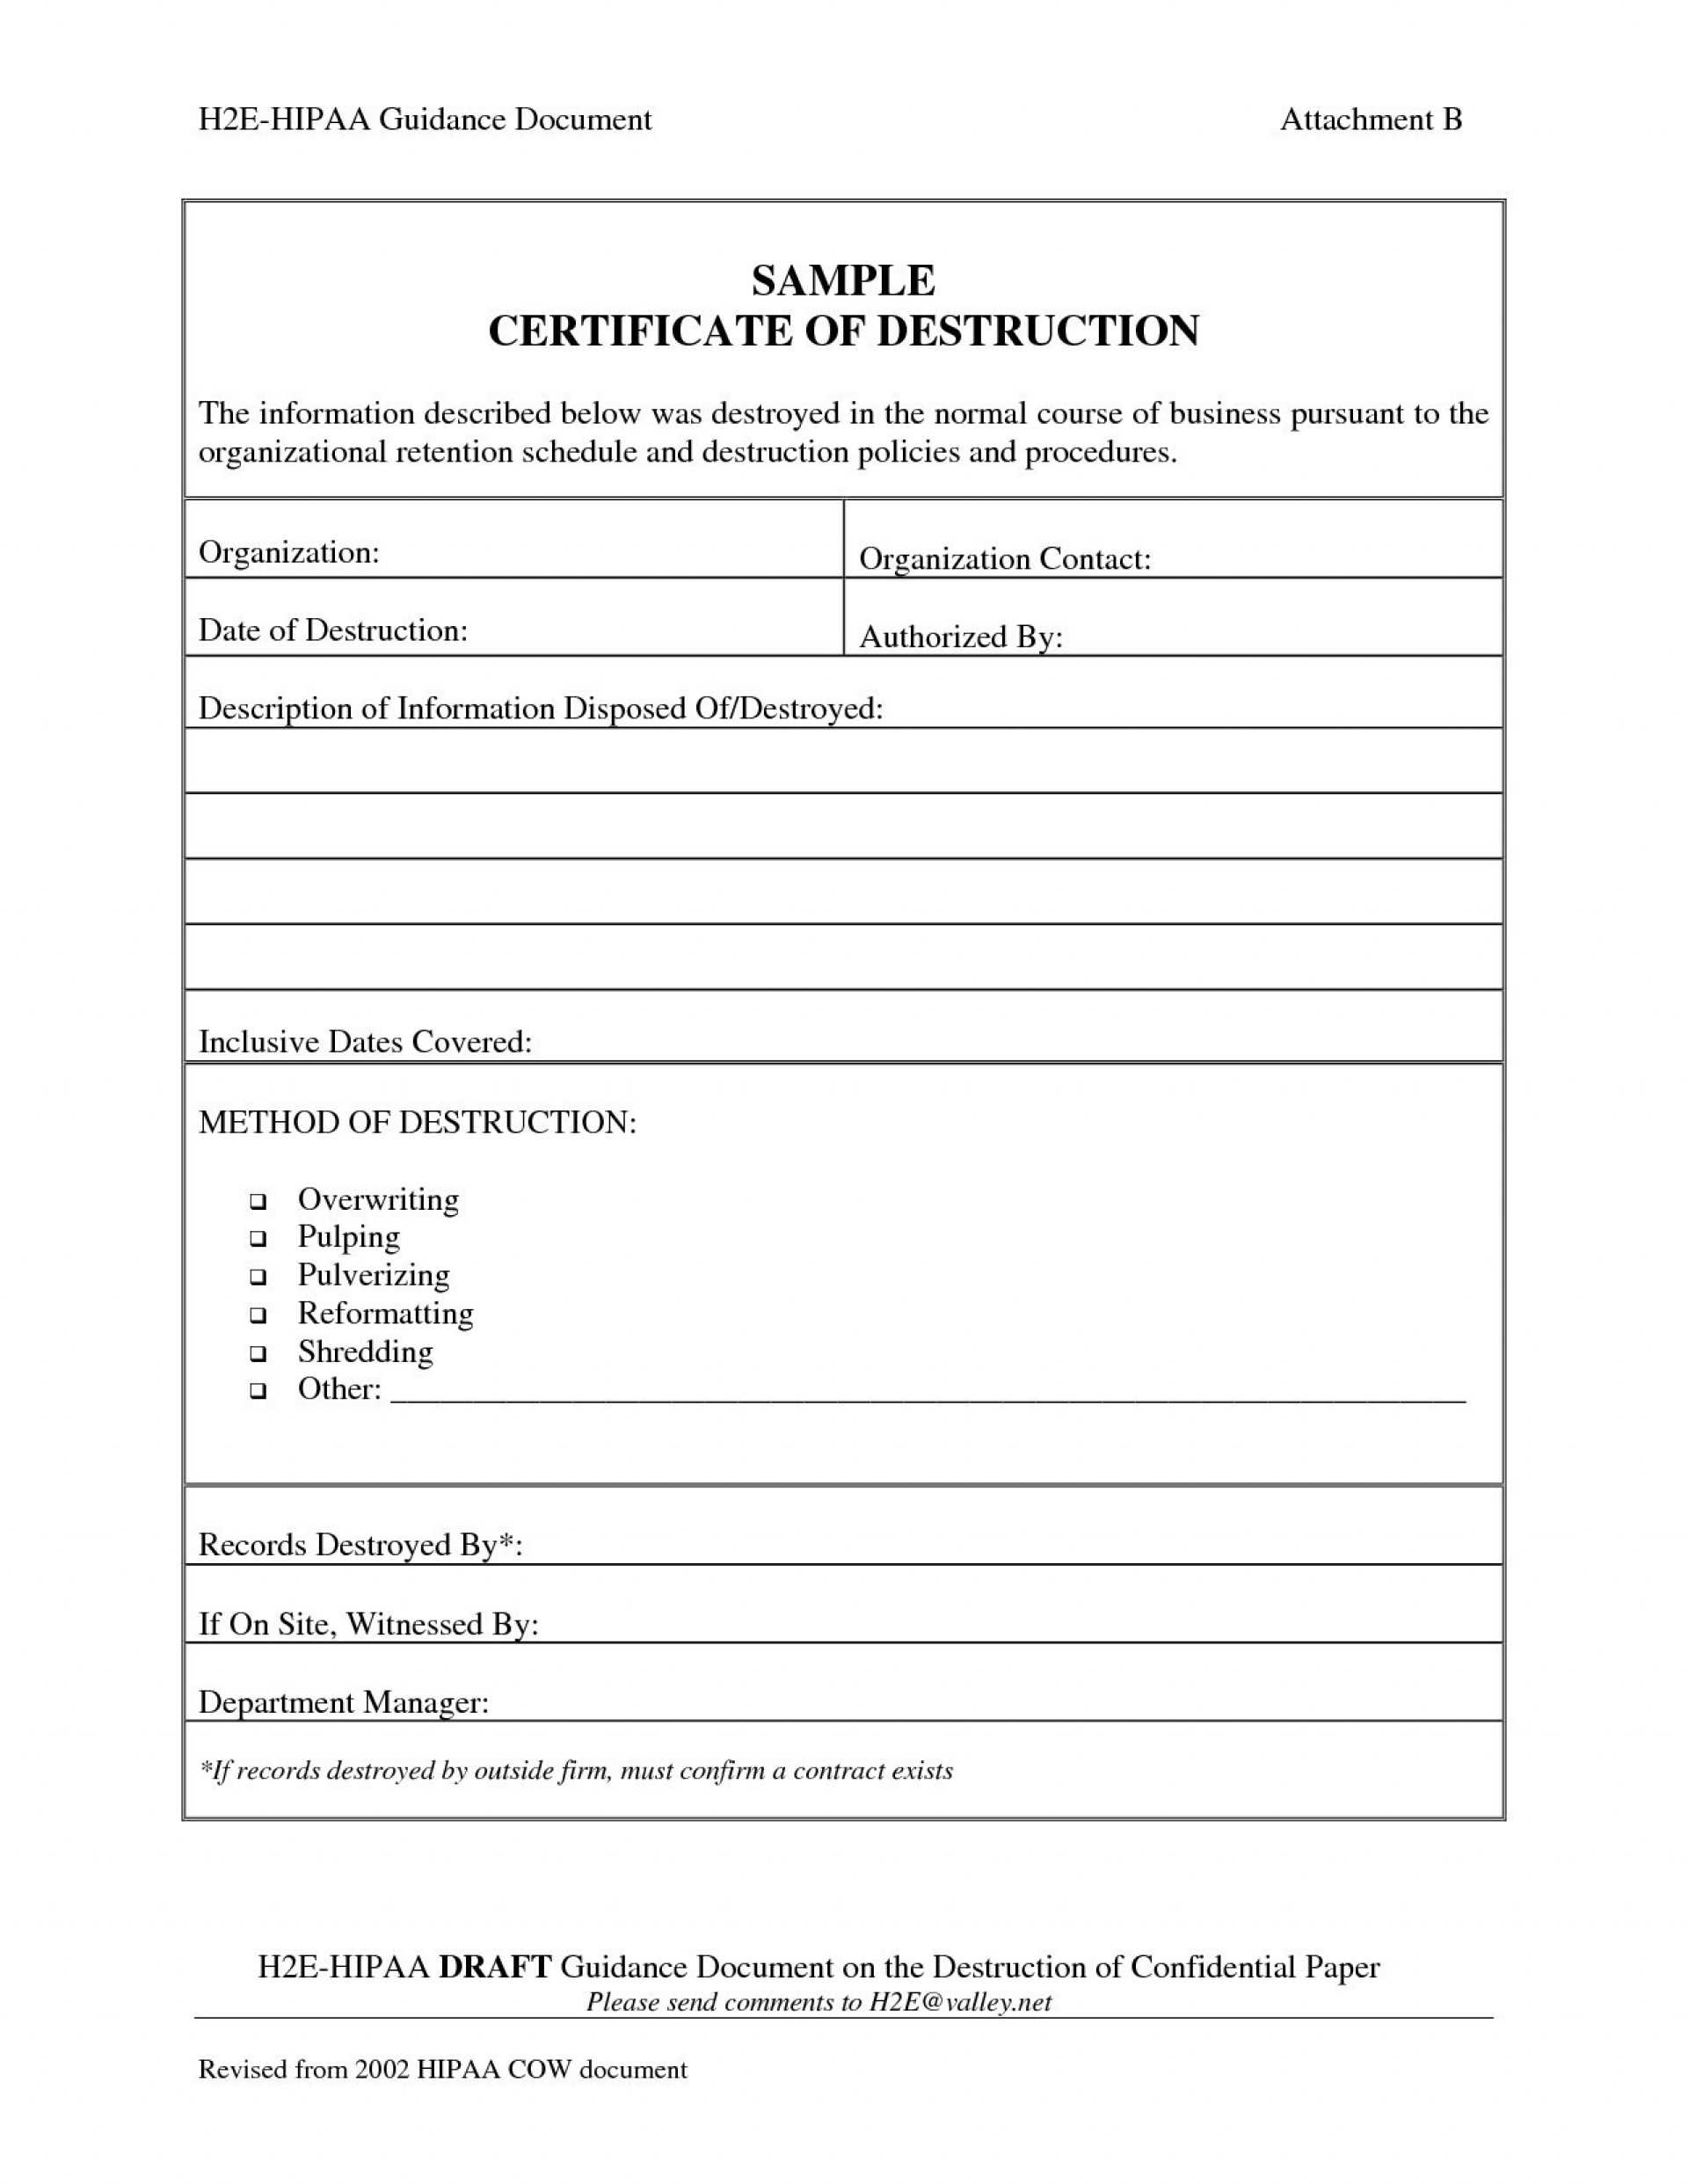 005 Certificate Of Destruction Template Ideas Exceptional In Free Certificate Of Destruction Template